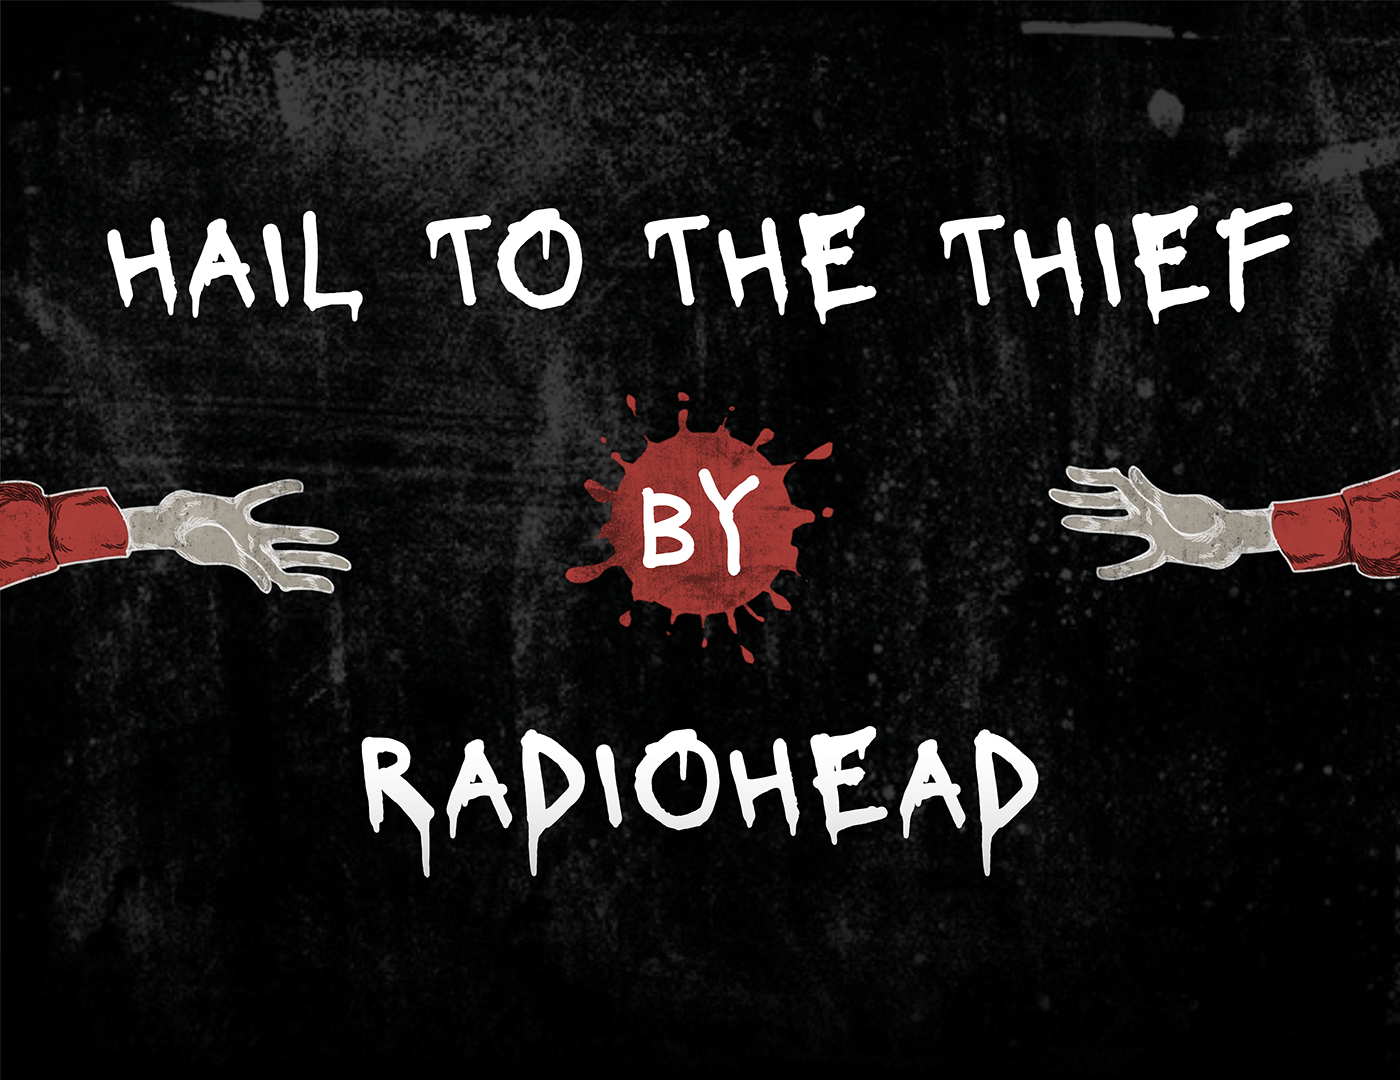 design Album Layout album cover Radiohead music artwork digital illustration hail to the thief redesign